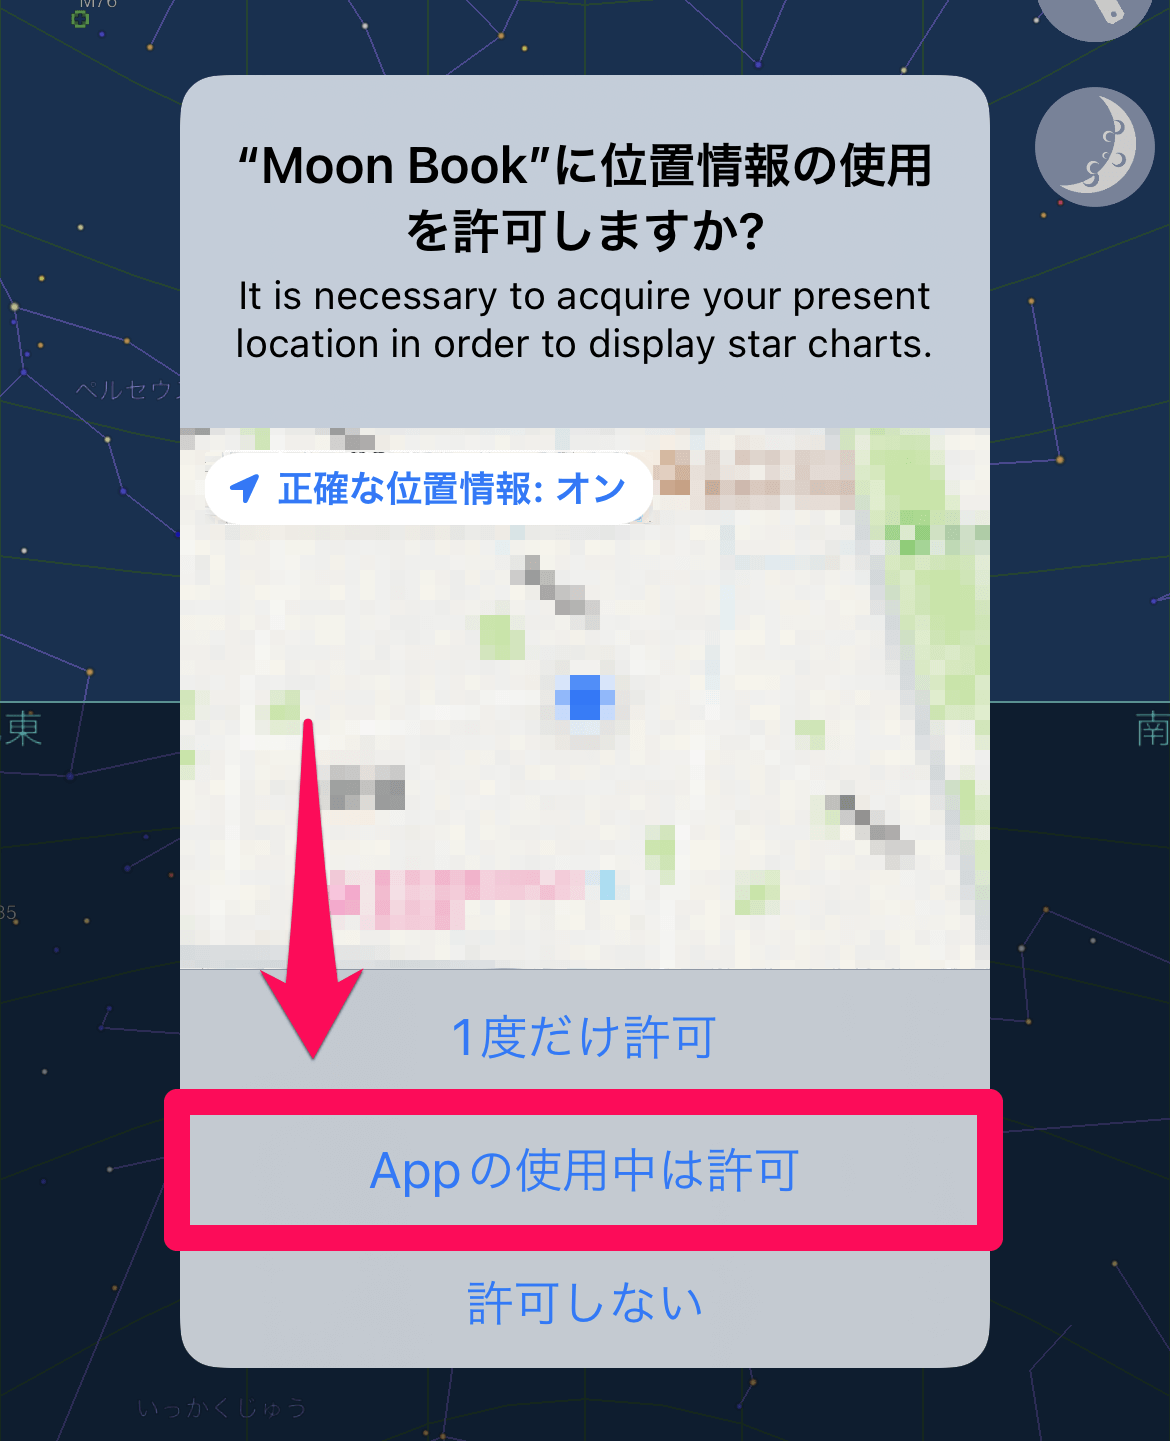 11月19日は「ほぼ皆既月食」、時間と方角は？ iPhone/Androidアプリで確認する方法も解説